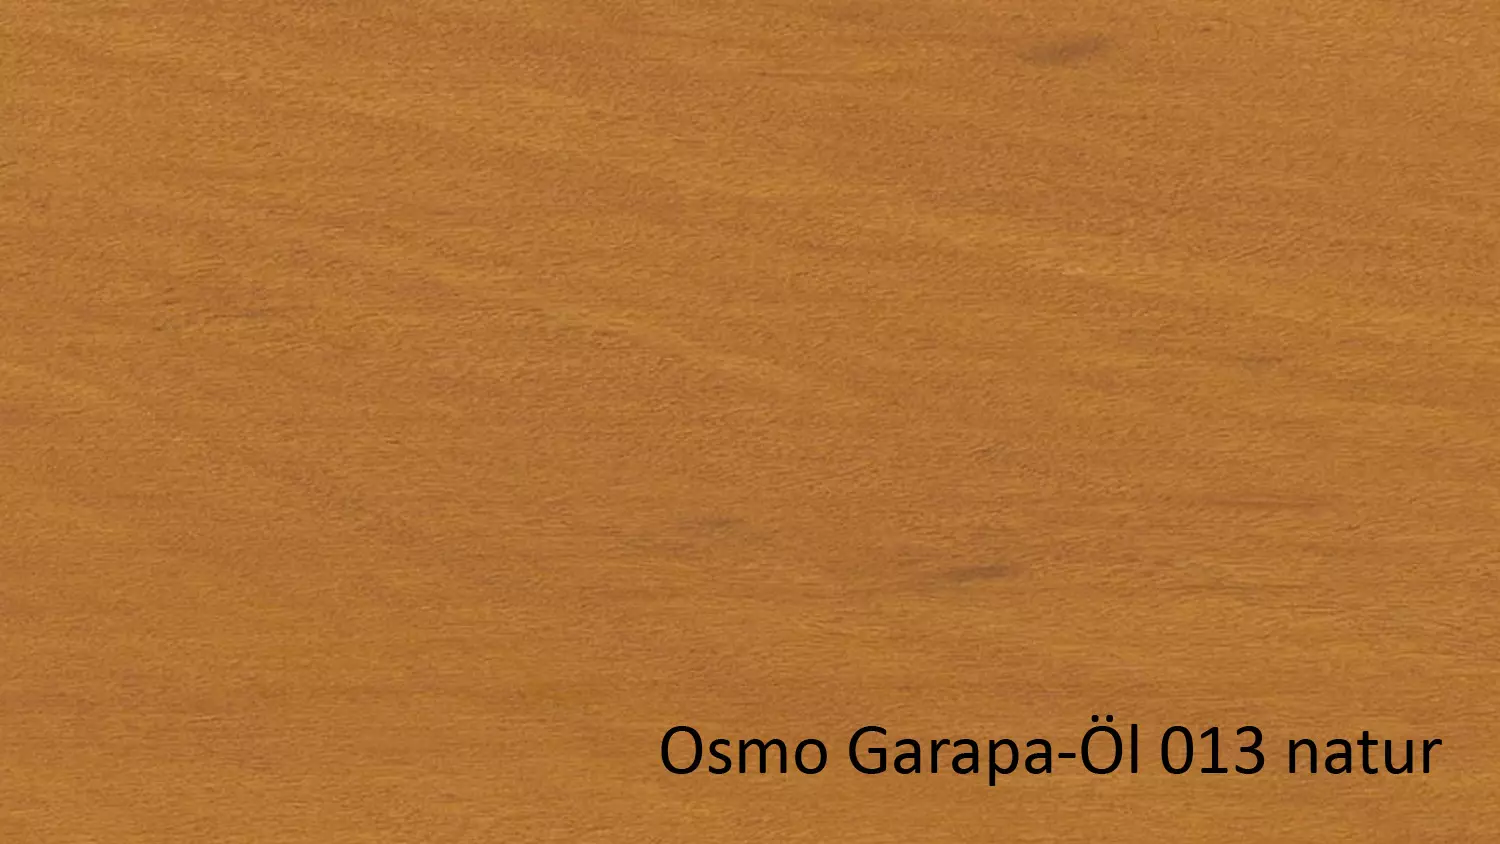 Osmo Terrassenöl 013 Garapa-Öl Naturgetönt transparent 0,75l (für Nadel- u. Edelhölzer) 